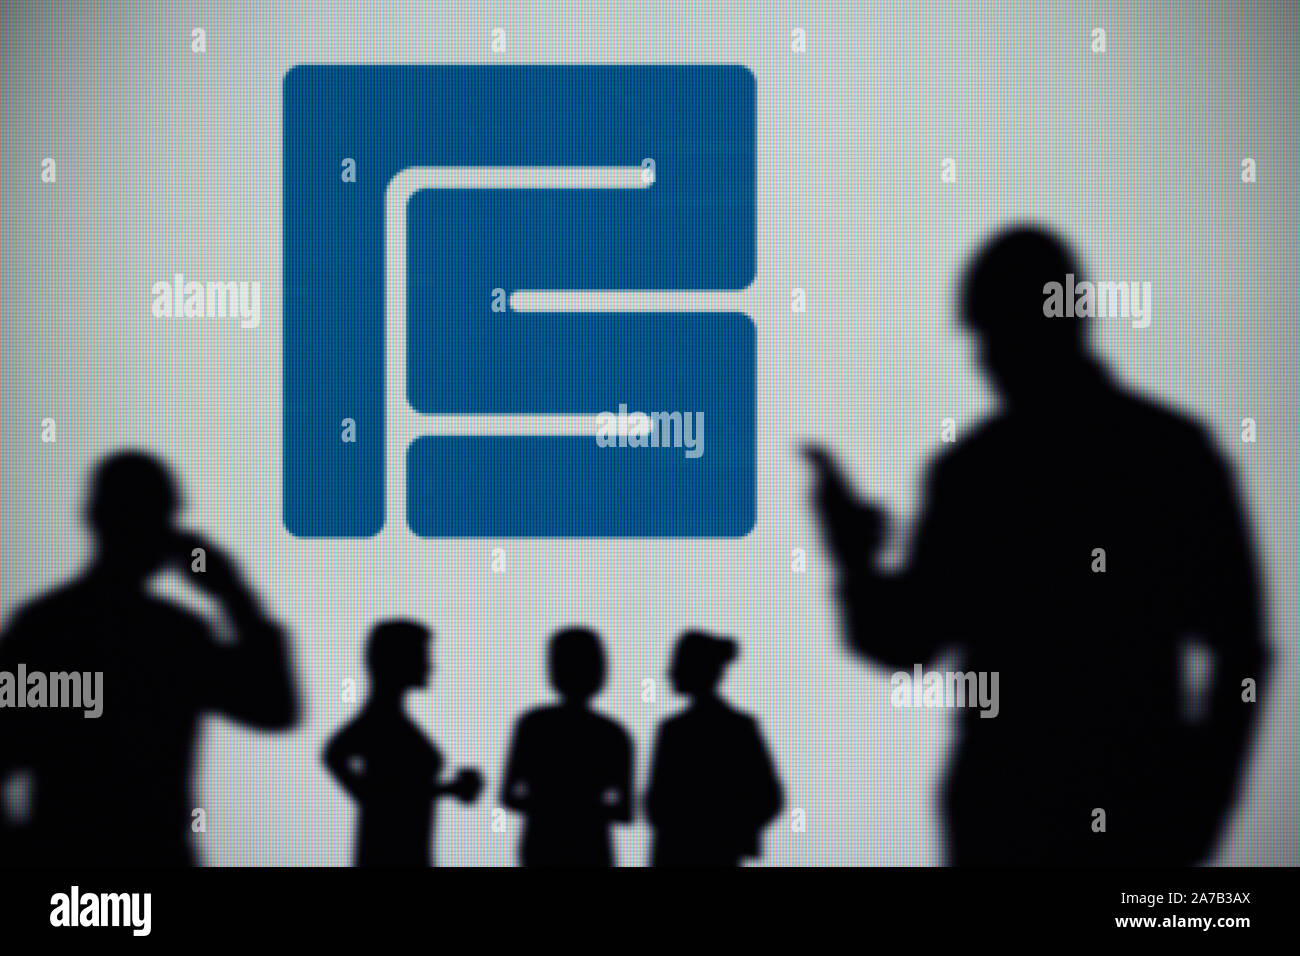 Le Pershing Square Holdings logo est visible sur un écran LED à l'arrière-plan tandis qu'une silhouette personne utilise un smartphone (usage éditorial uniquement) Banque D'Images